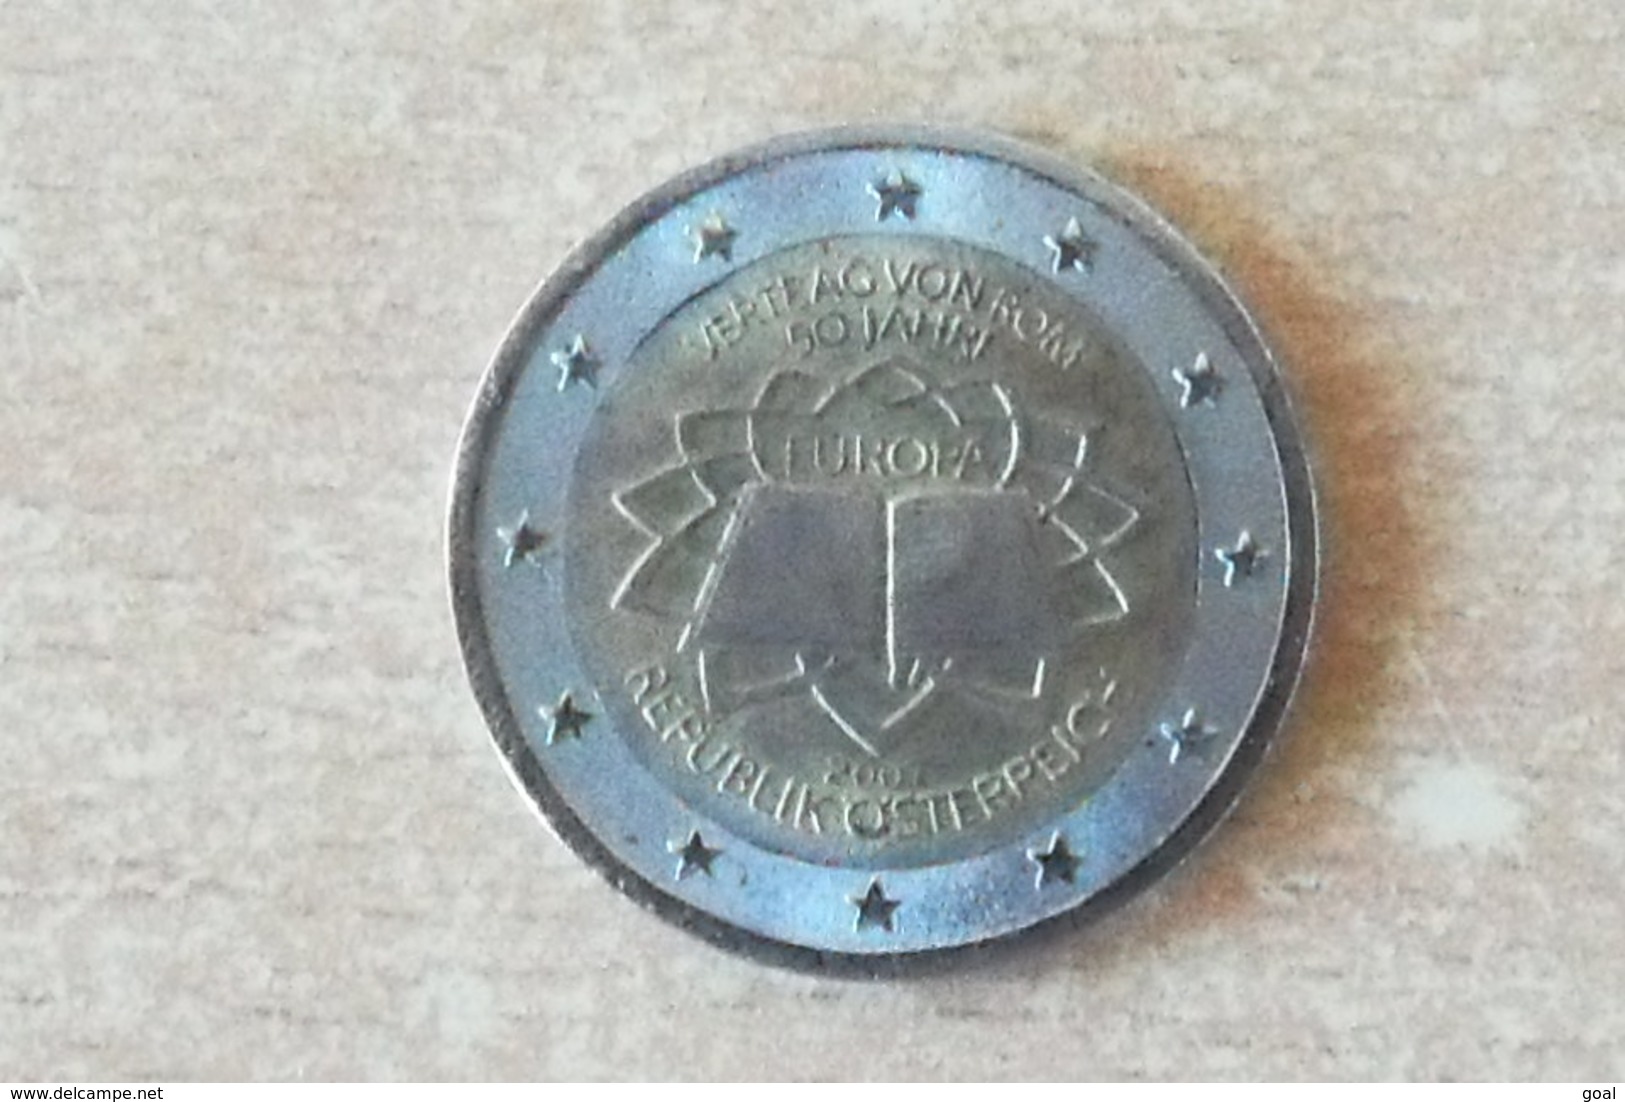 2 Euros Désaxé/SUP./Autriche Commémorative 2007/coins Bouché+Divers Défauts/Strie Et Légende Conforme;Magnétique=Vrai. - Variétés Et Curiosités